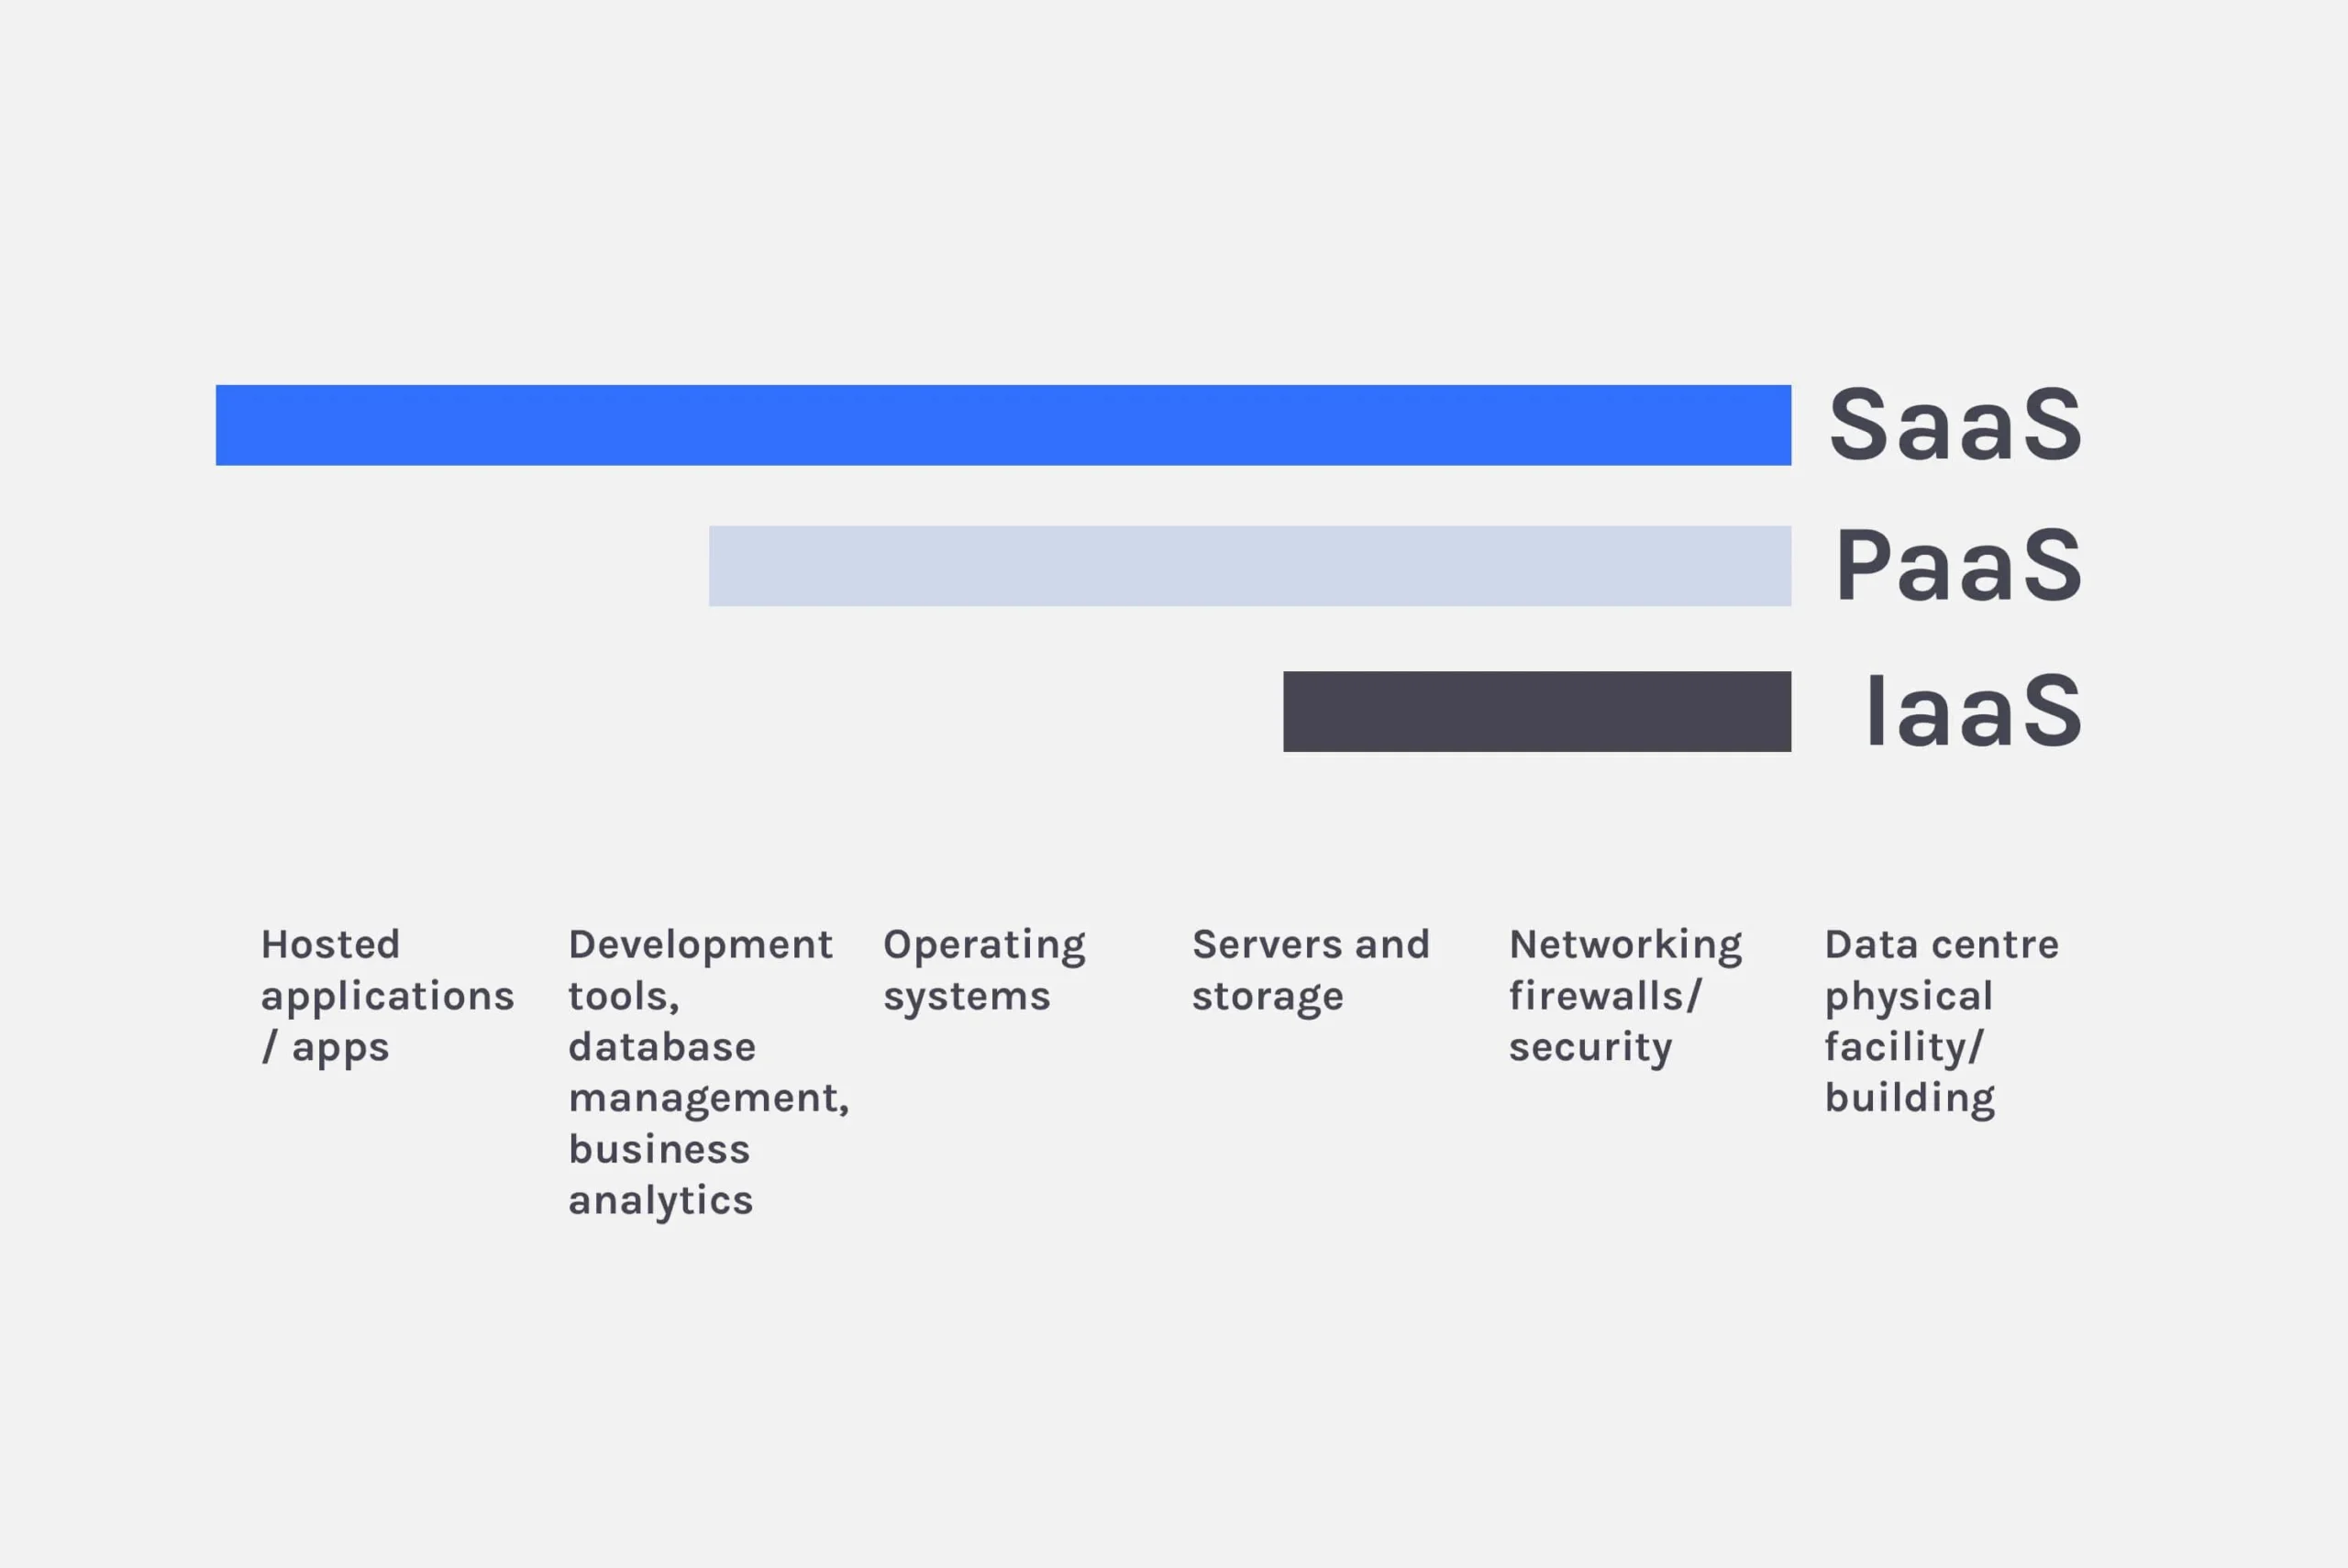 is hewlett packard cloud a iaas paas or saas - What is Salesforce SaaS or PaaS